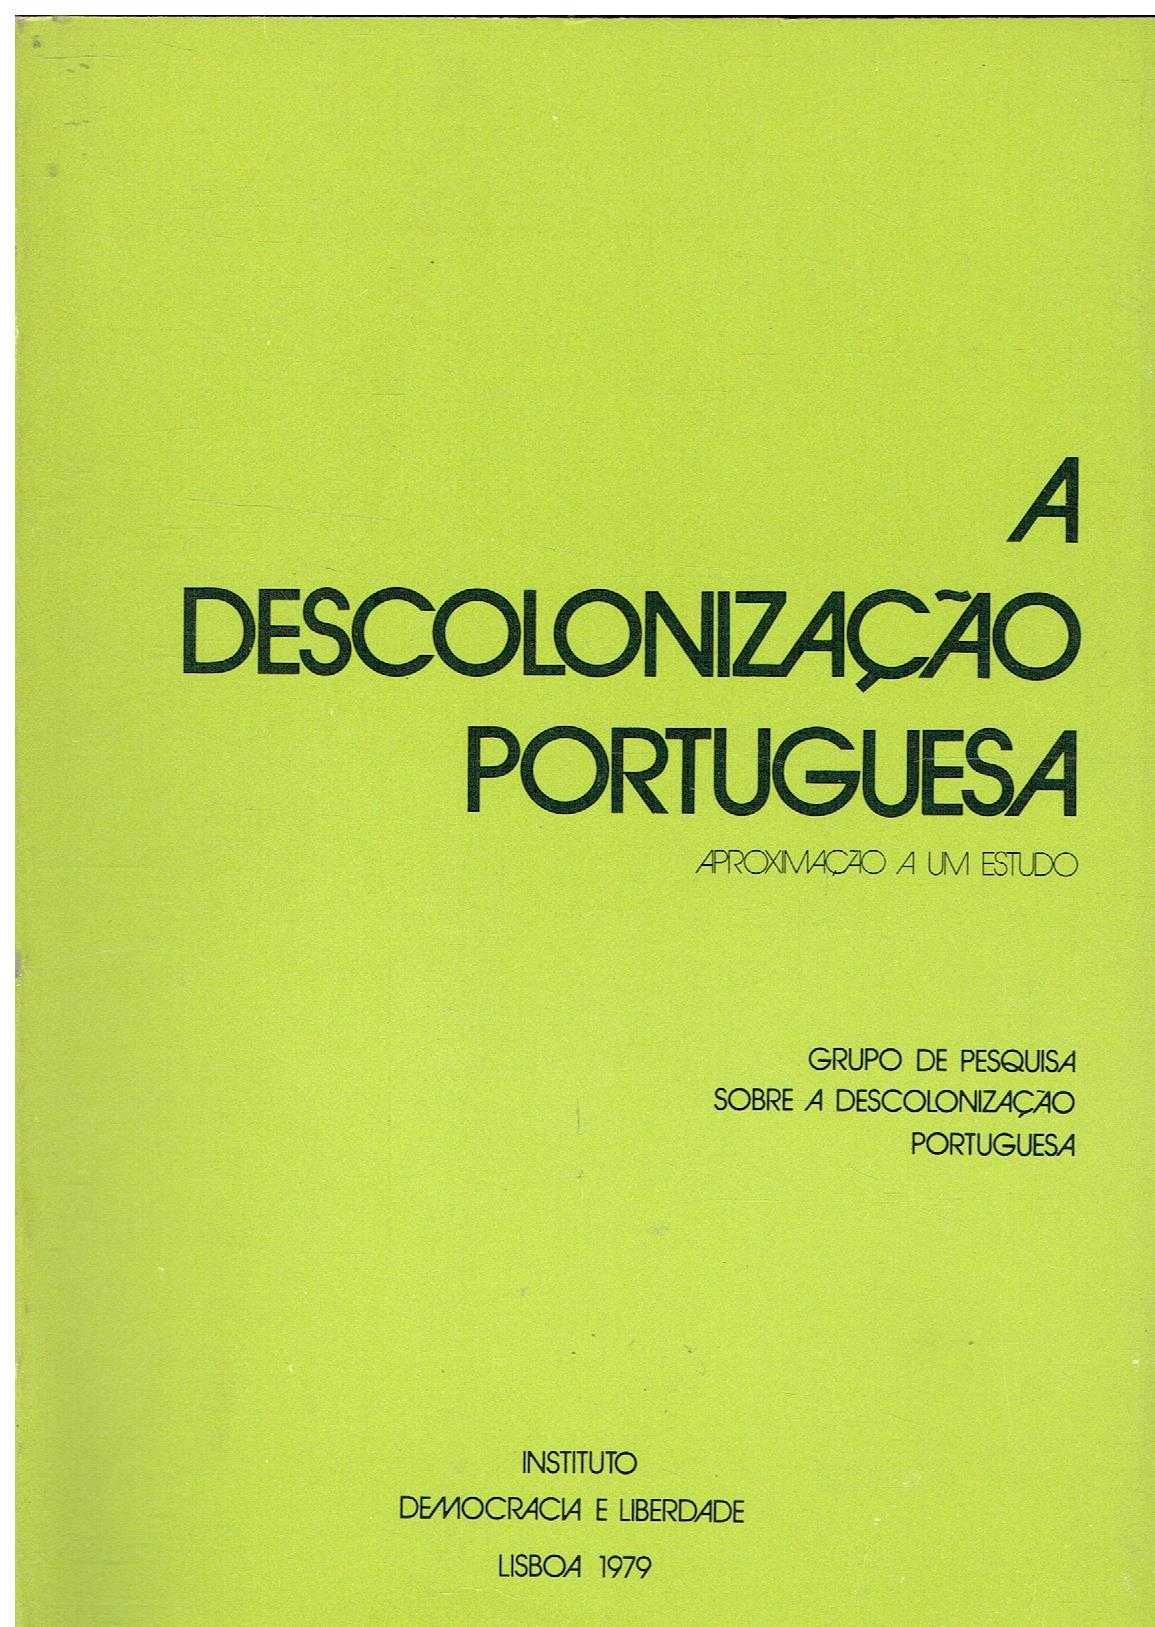 7840 - Livros sobre a Descolonização 2